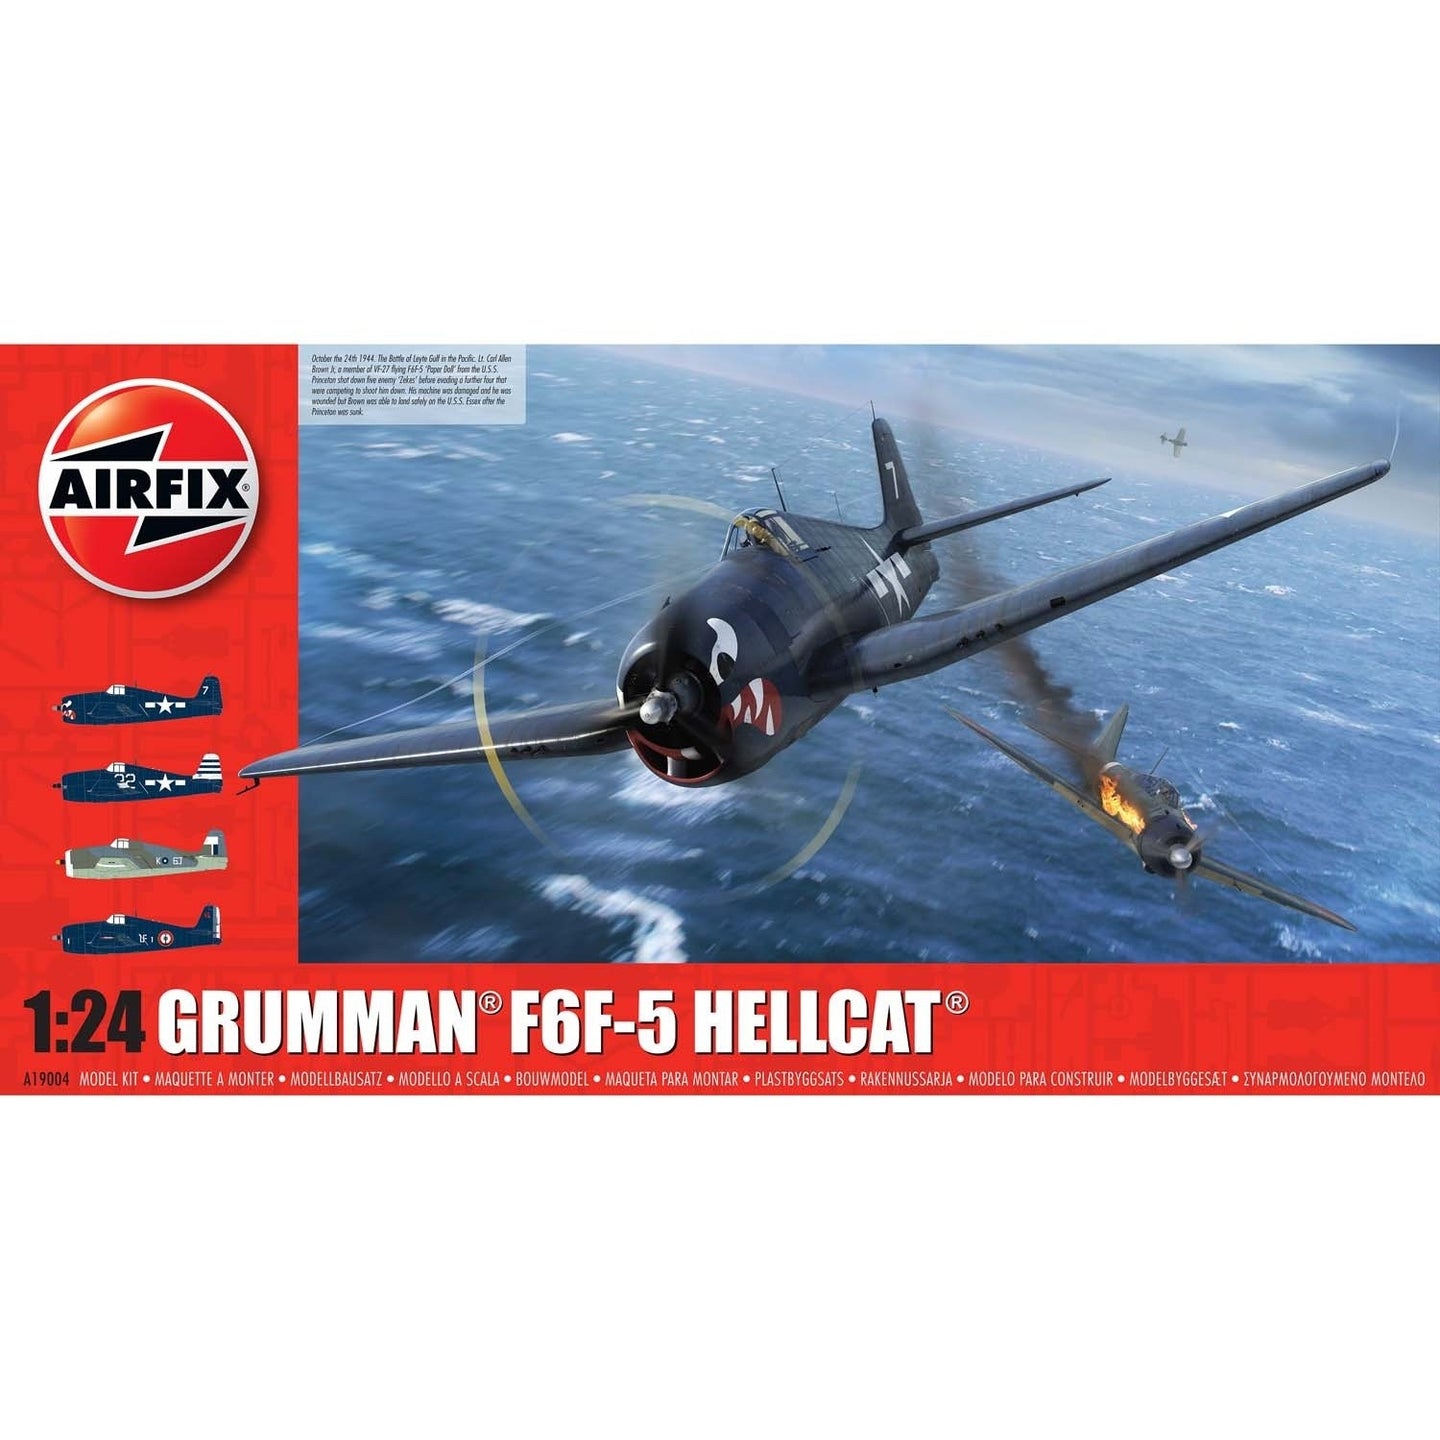 Airfix 1/24 Grumman F6F-5 Hellcat 19004